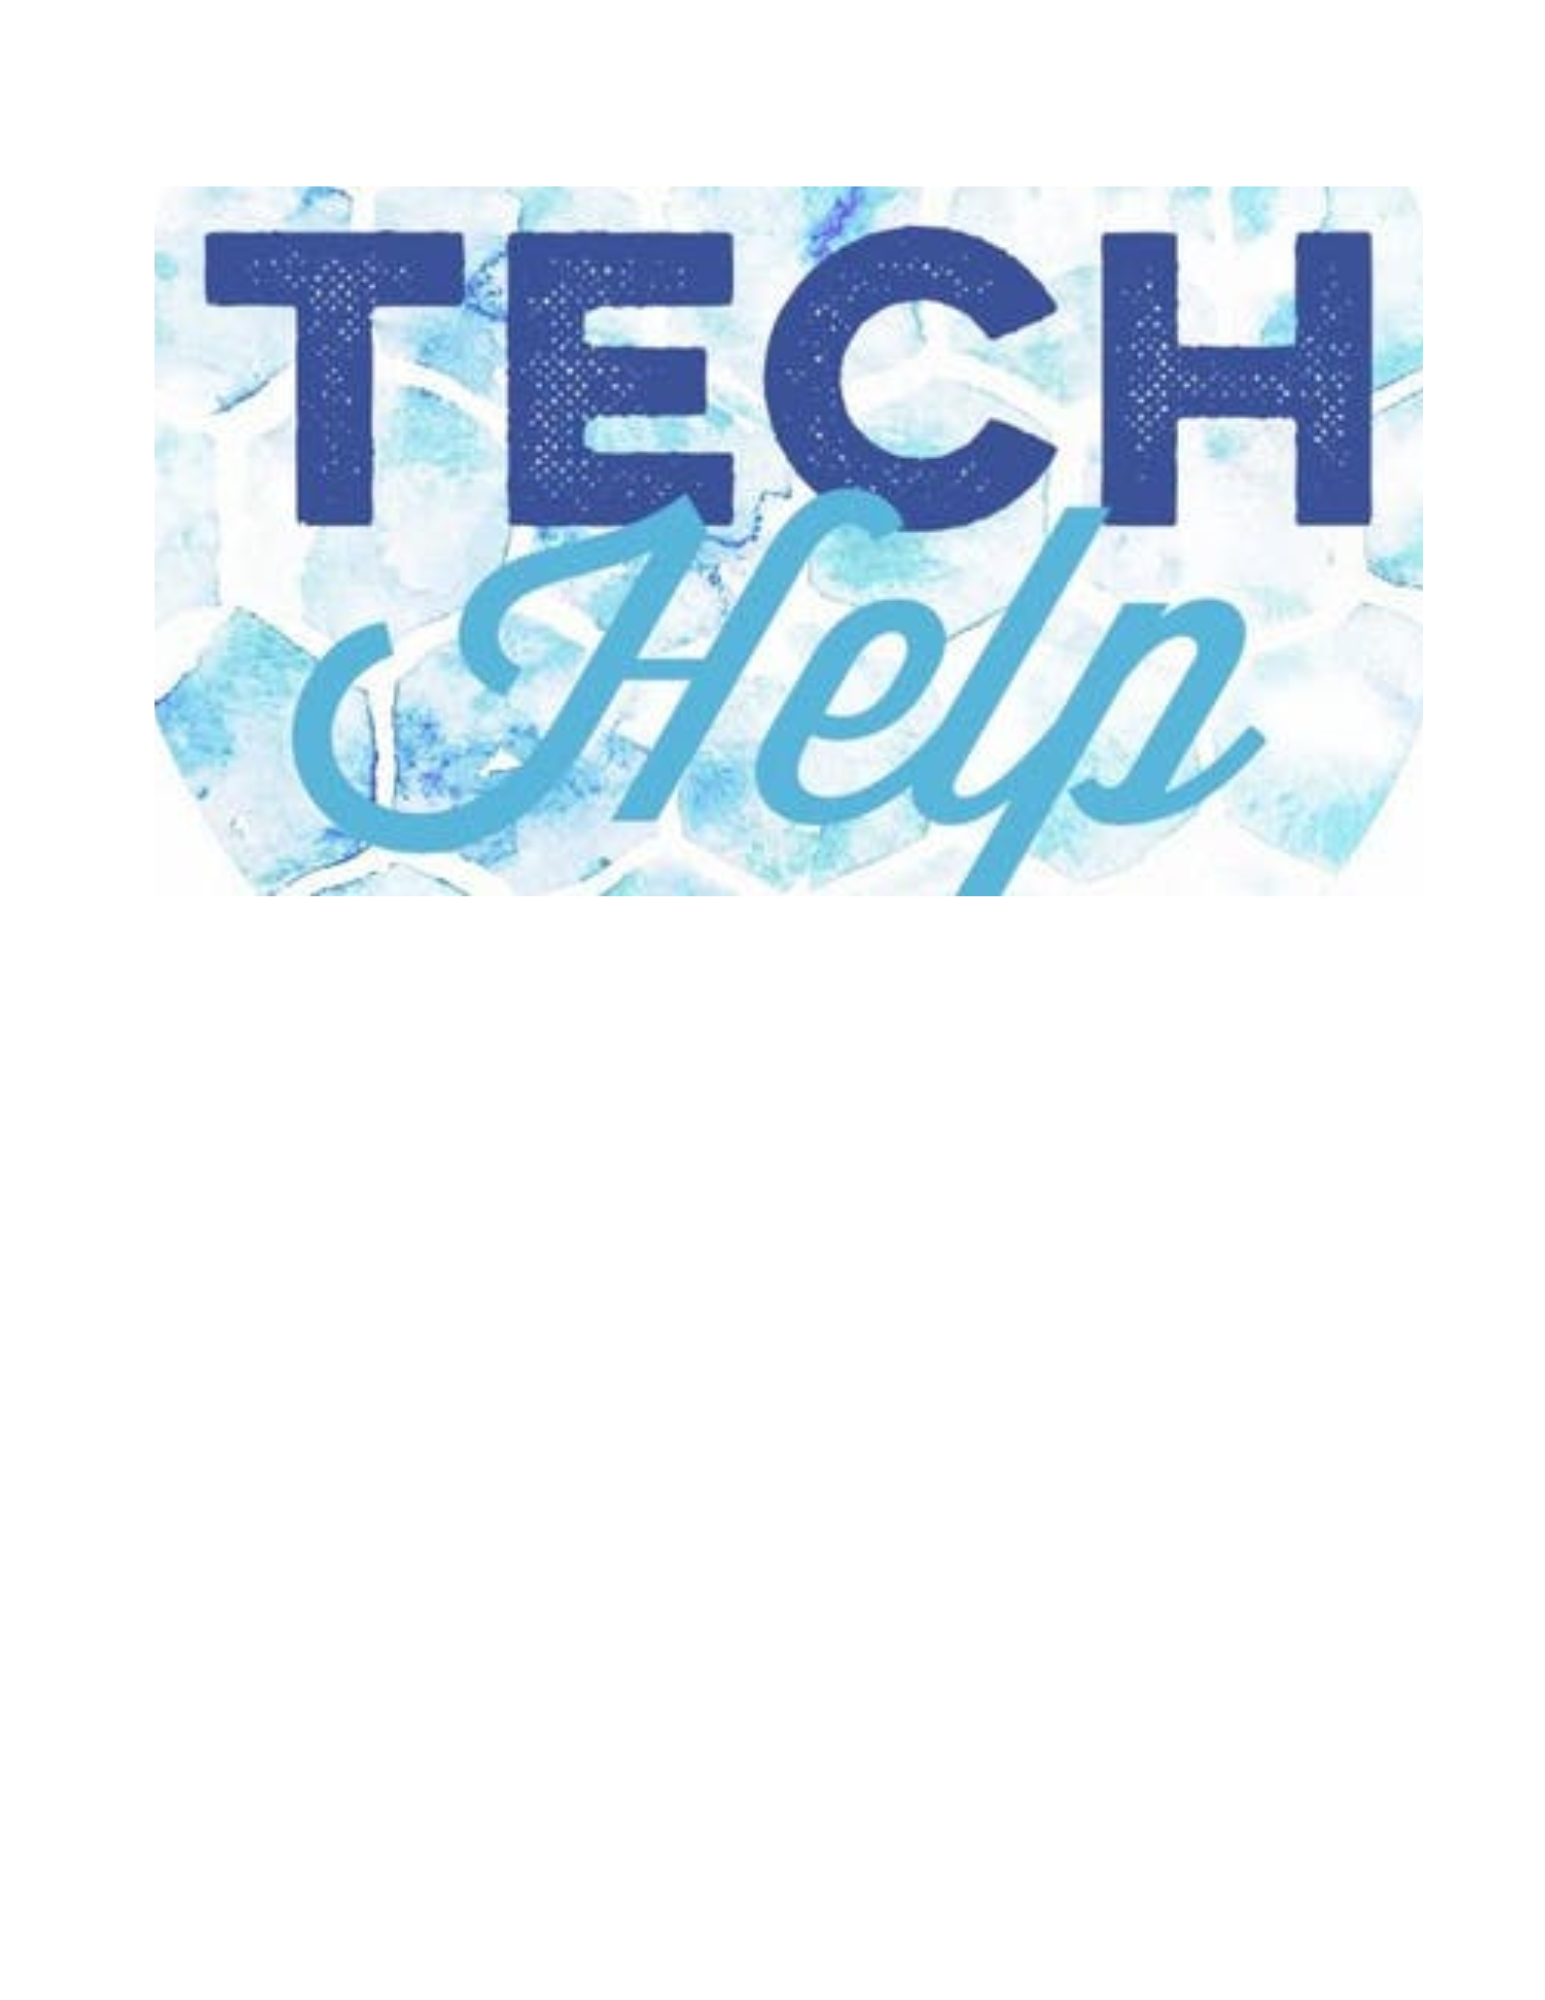 Tech Help written in blue